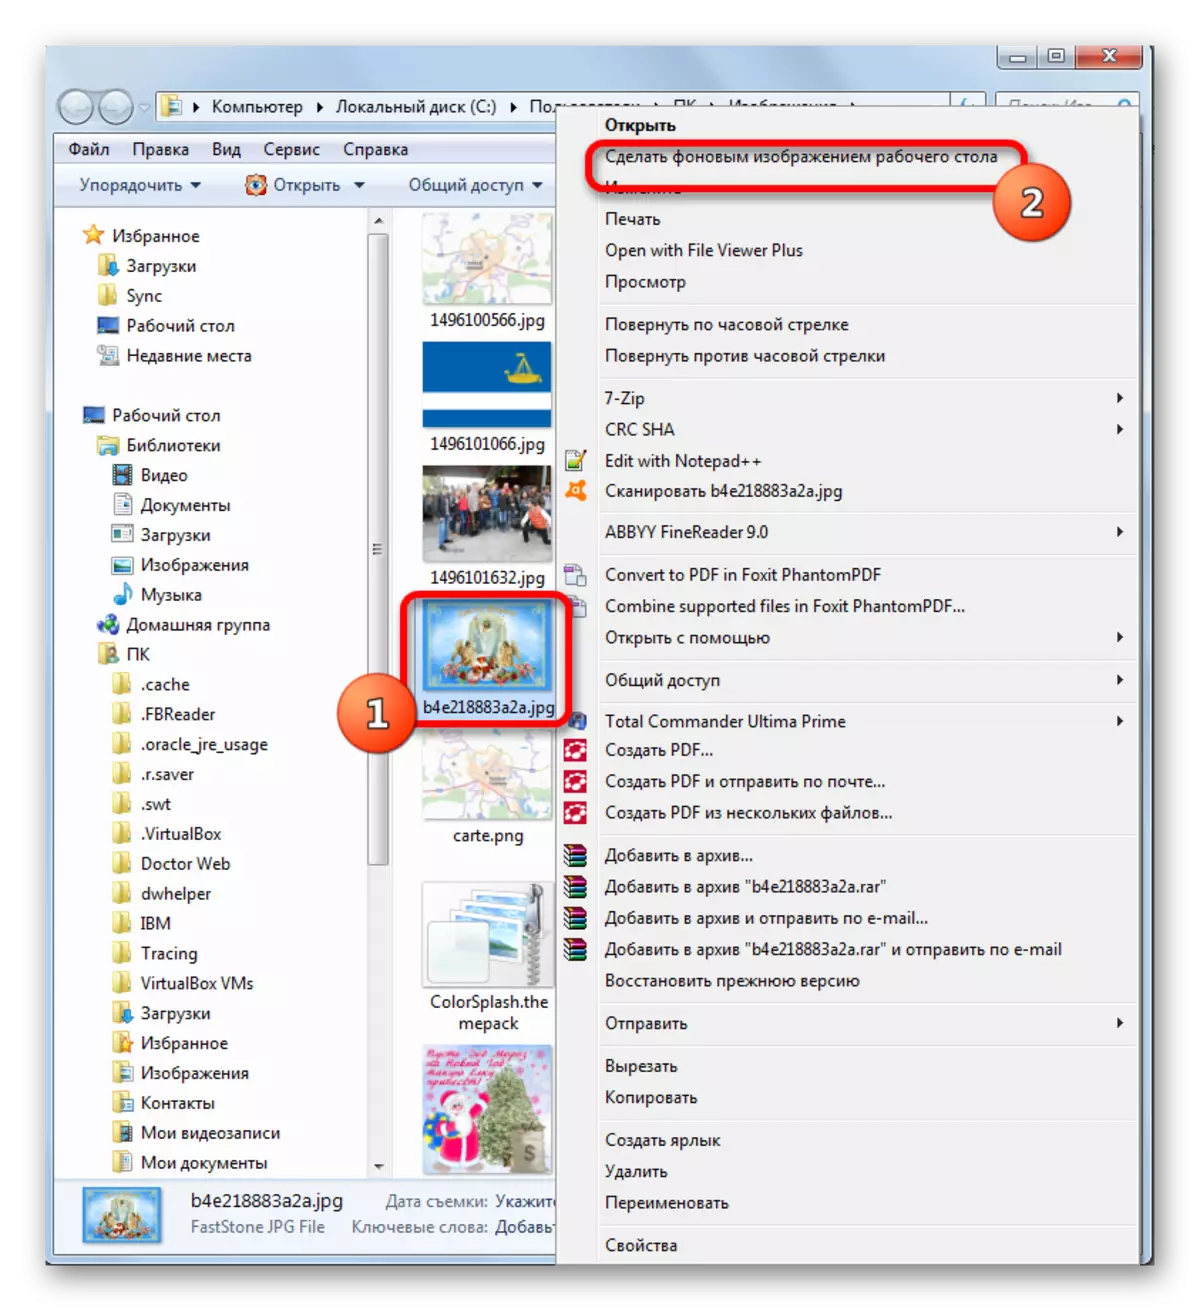 טשאַנגינג די הינטערגרונט בילד פון די דעסקטאַפּ דורך Windows Explorer אין Windows 7